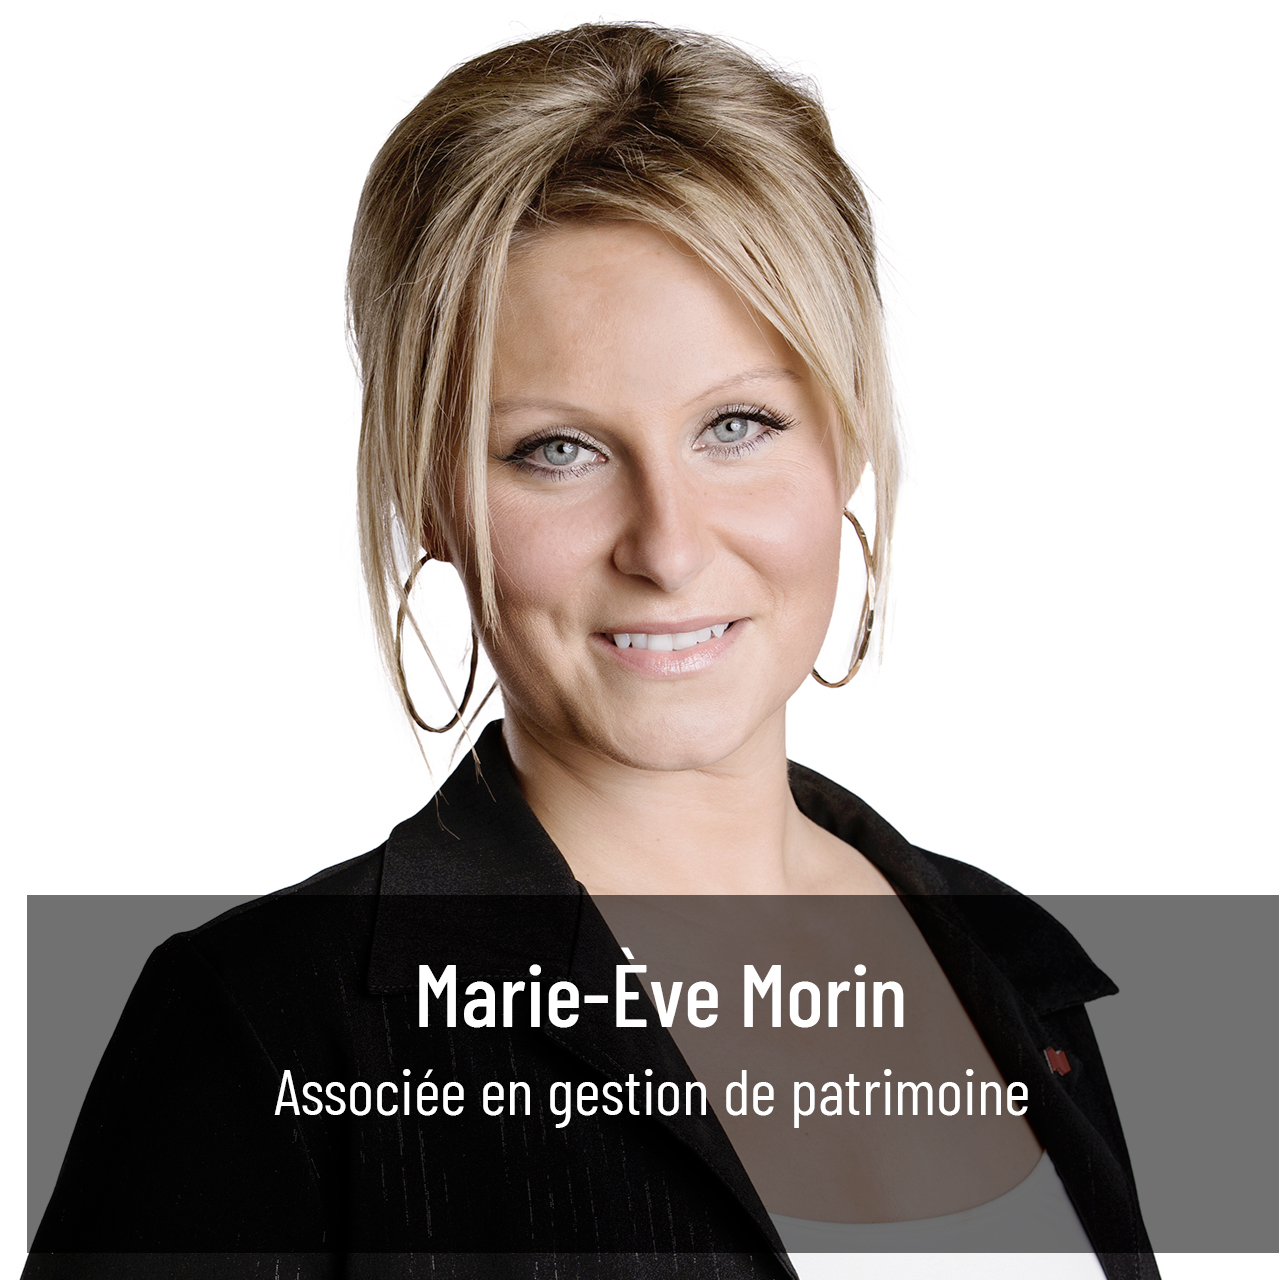 Marie-Ève Morin